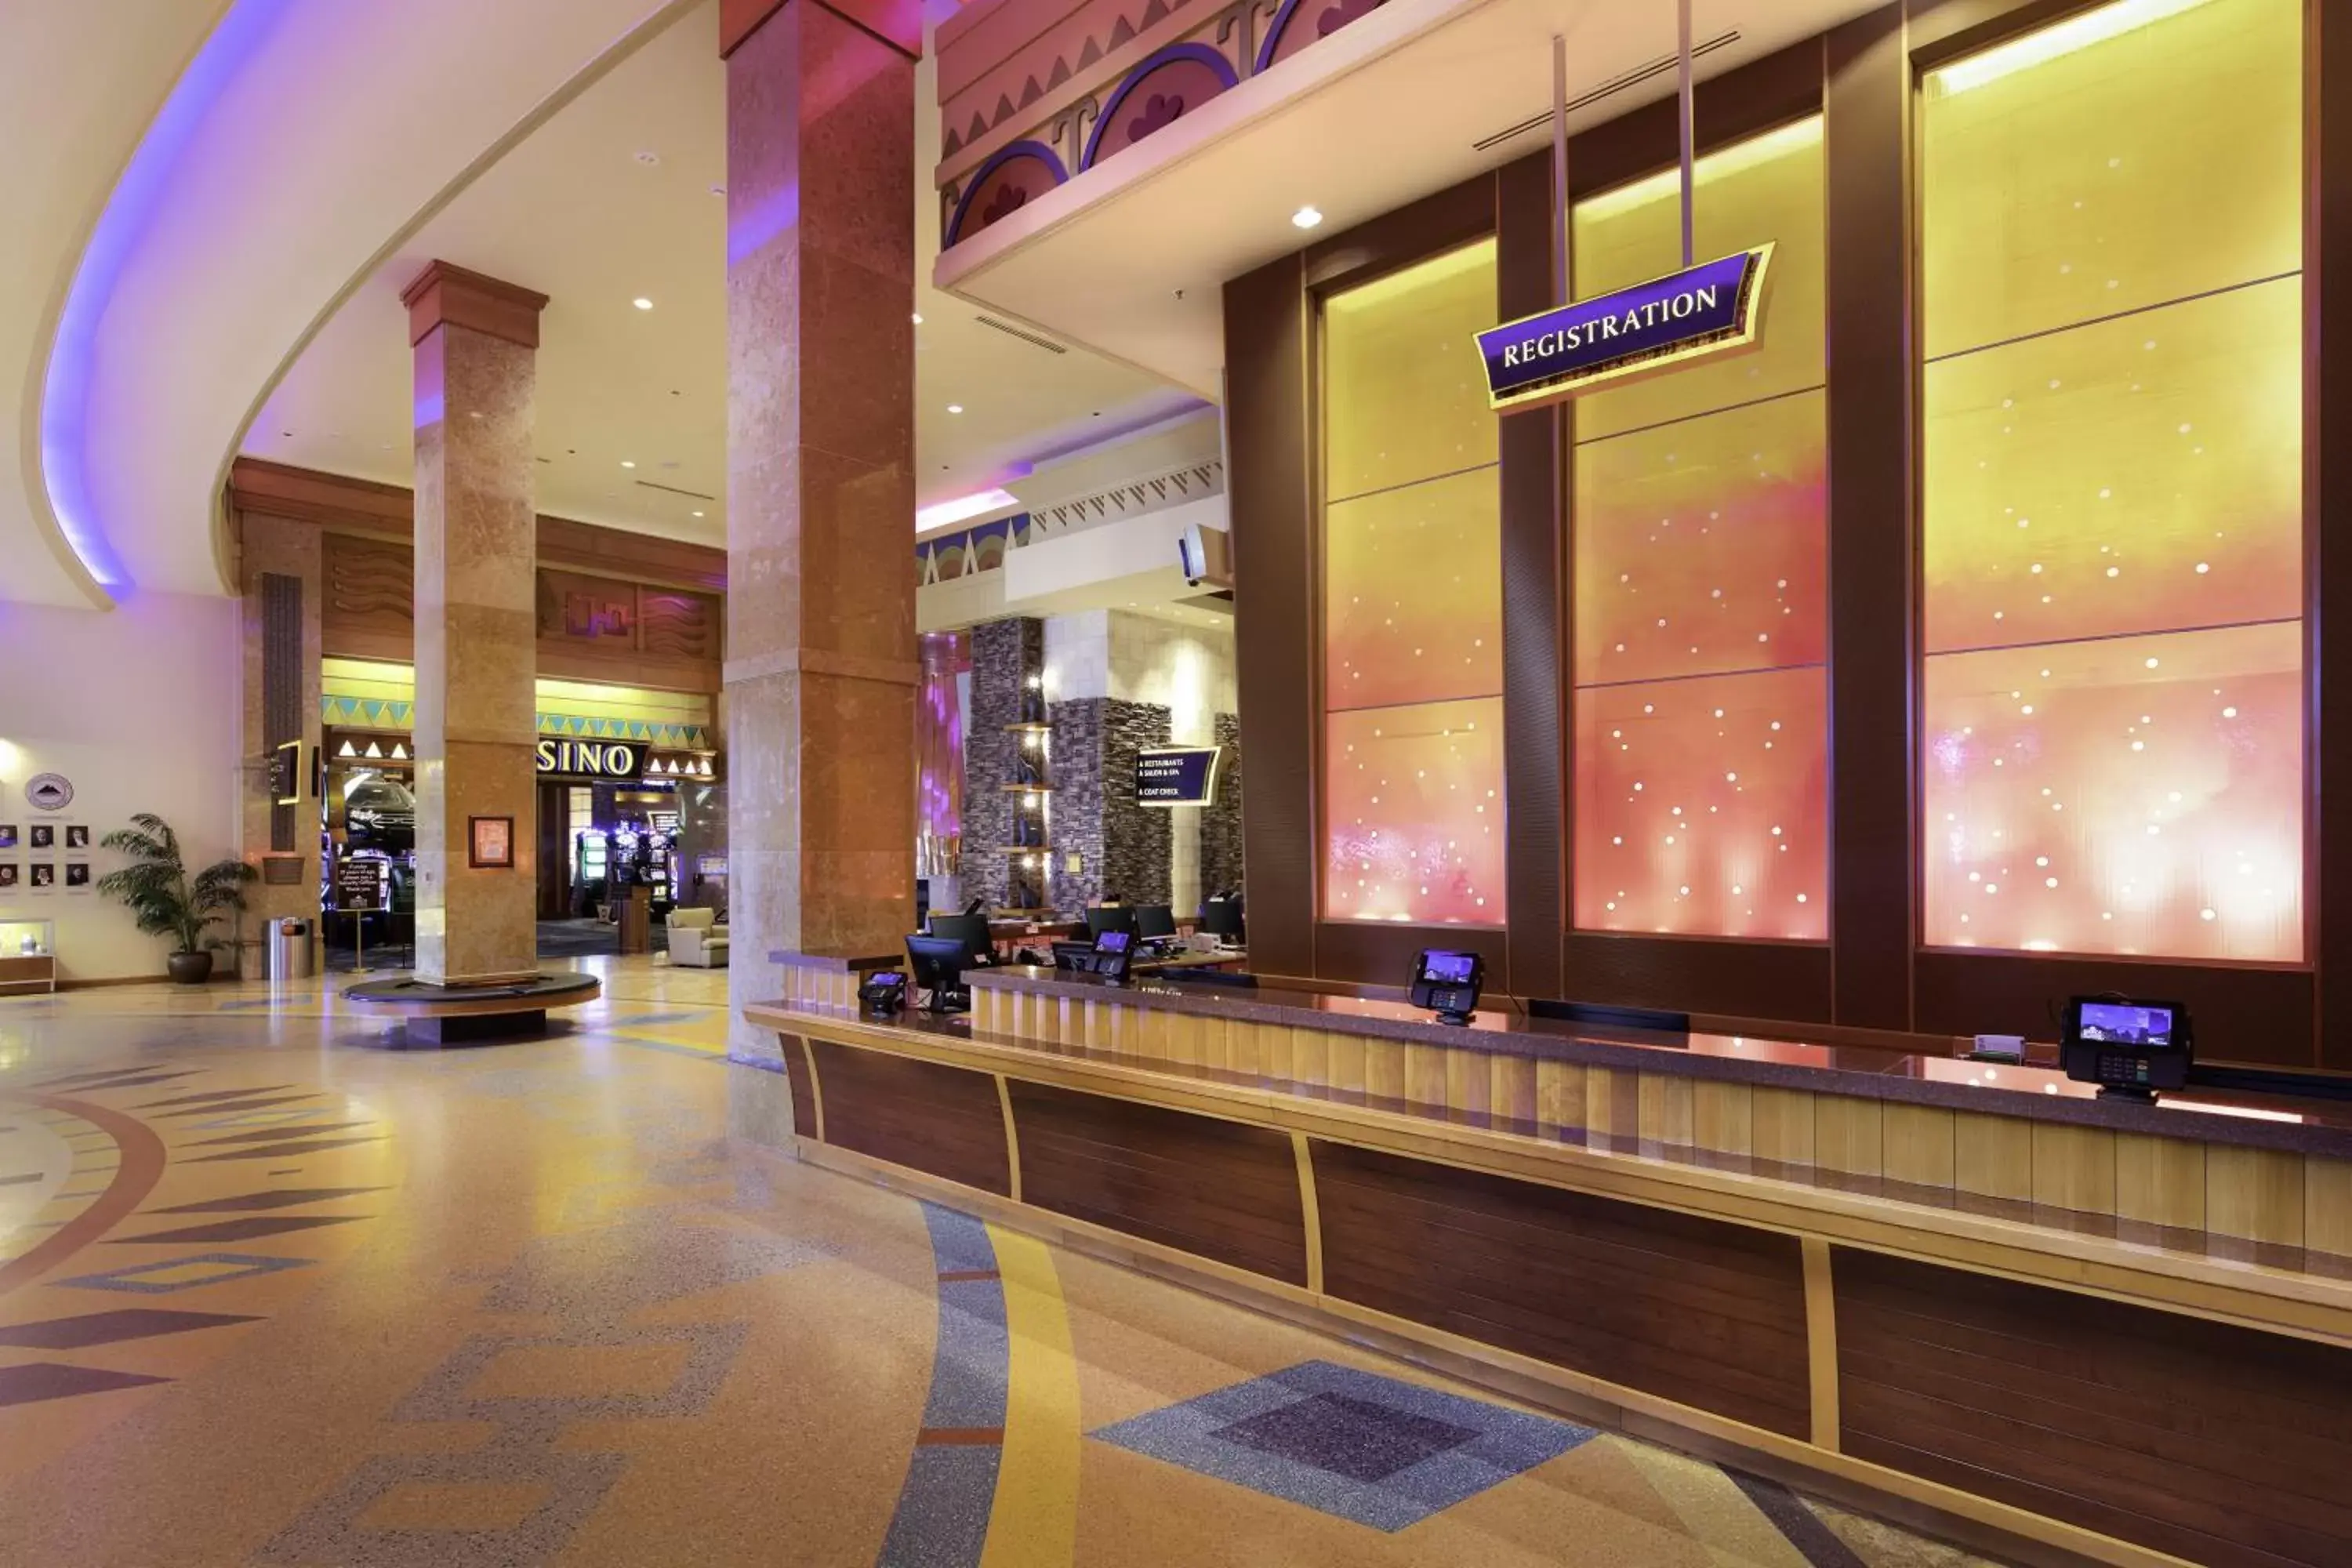 Lobby or reception in Seneca Allegany Resort & Casino